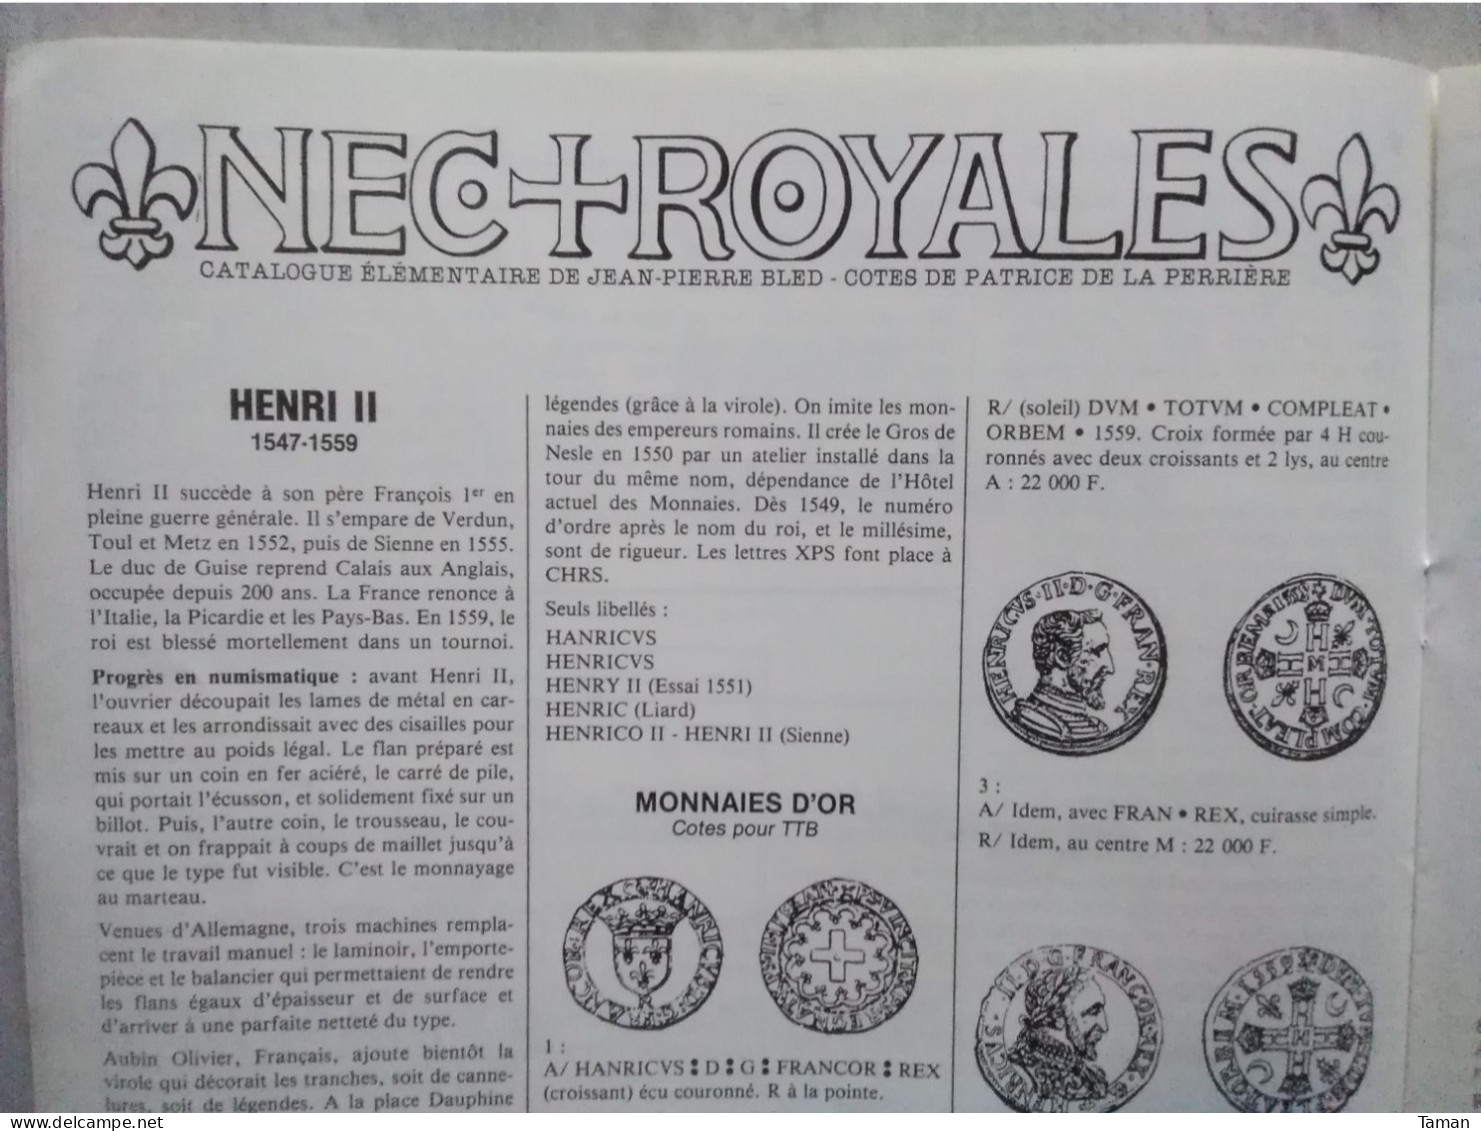 Numismatique & change - Napoléonides Italie - Circulation du billon en France - Grèce antique - Royales - Belgique